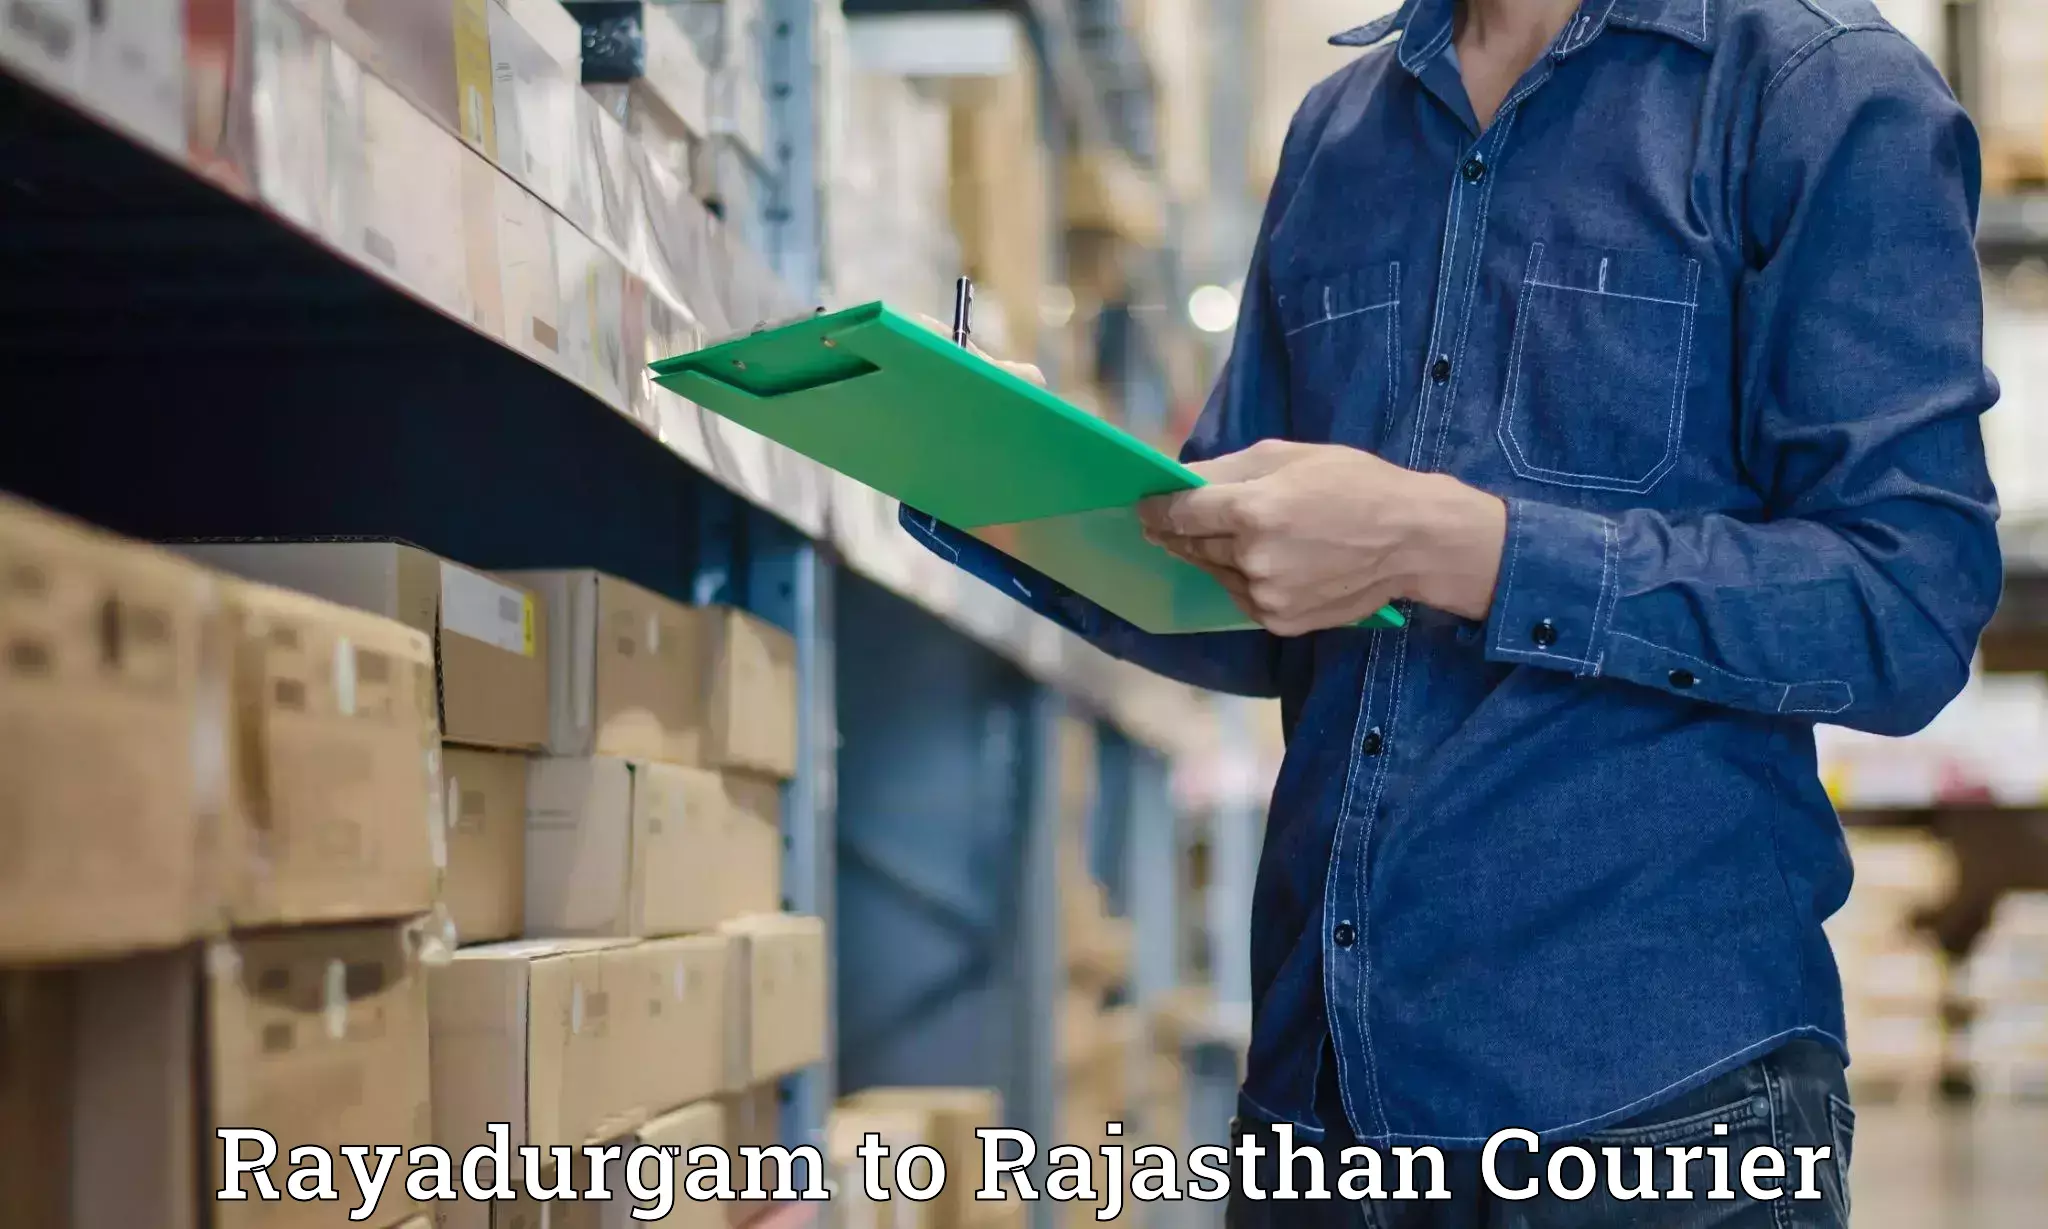 Baggage shipping experience Rayadurgam to Rajasthan